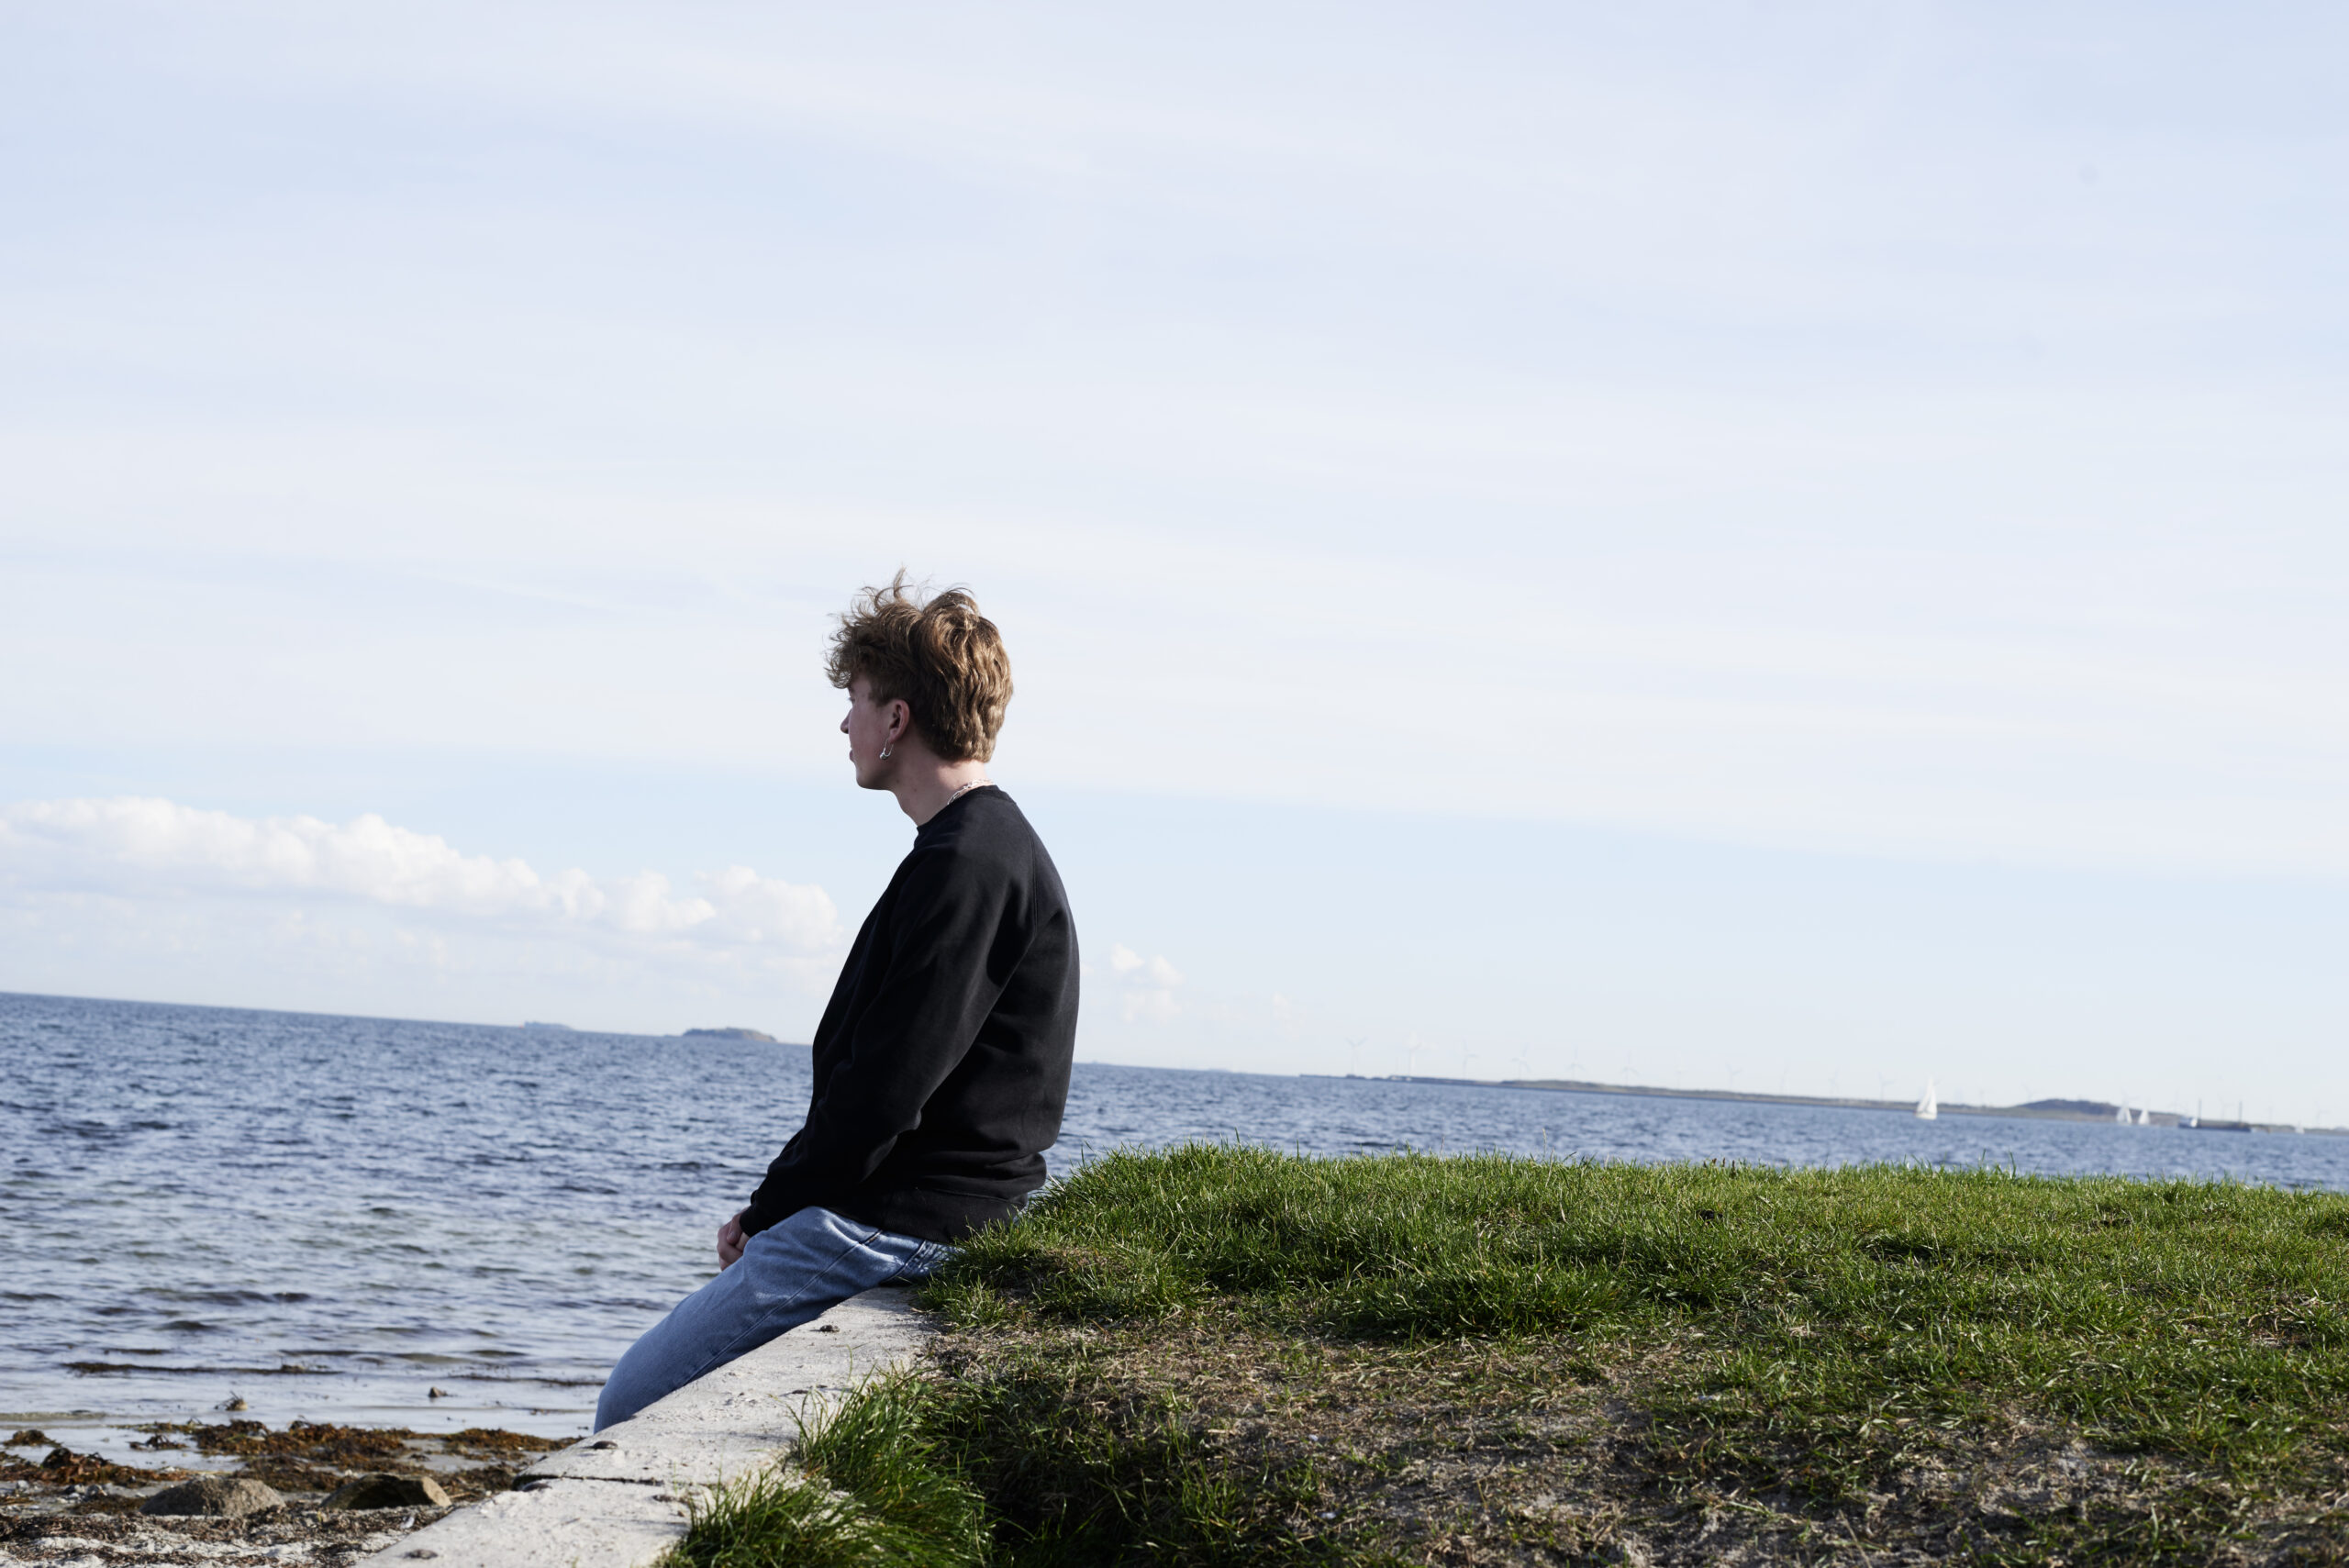 Ung dreng kigger ud over havet